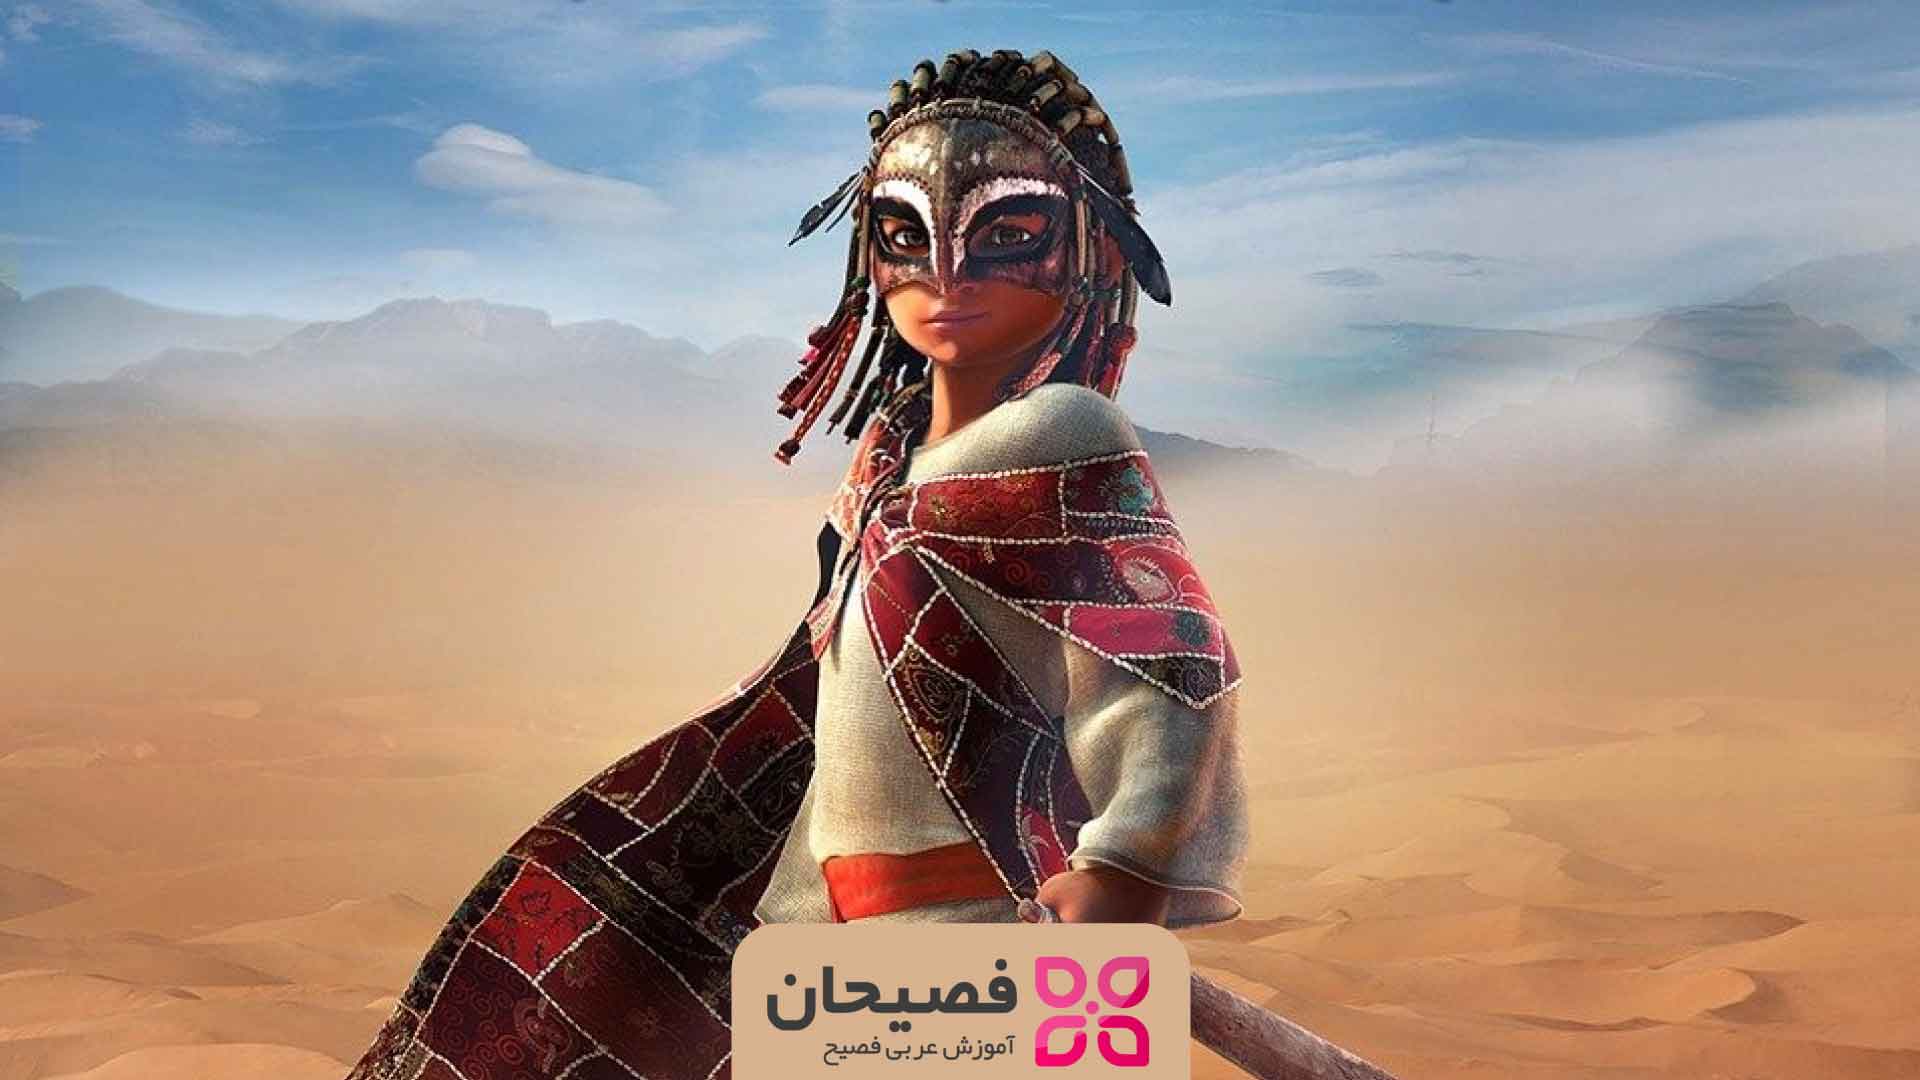 دانلود انیمیشن عربی فصیح بلال